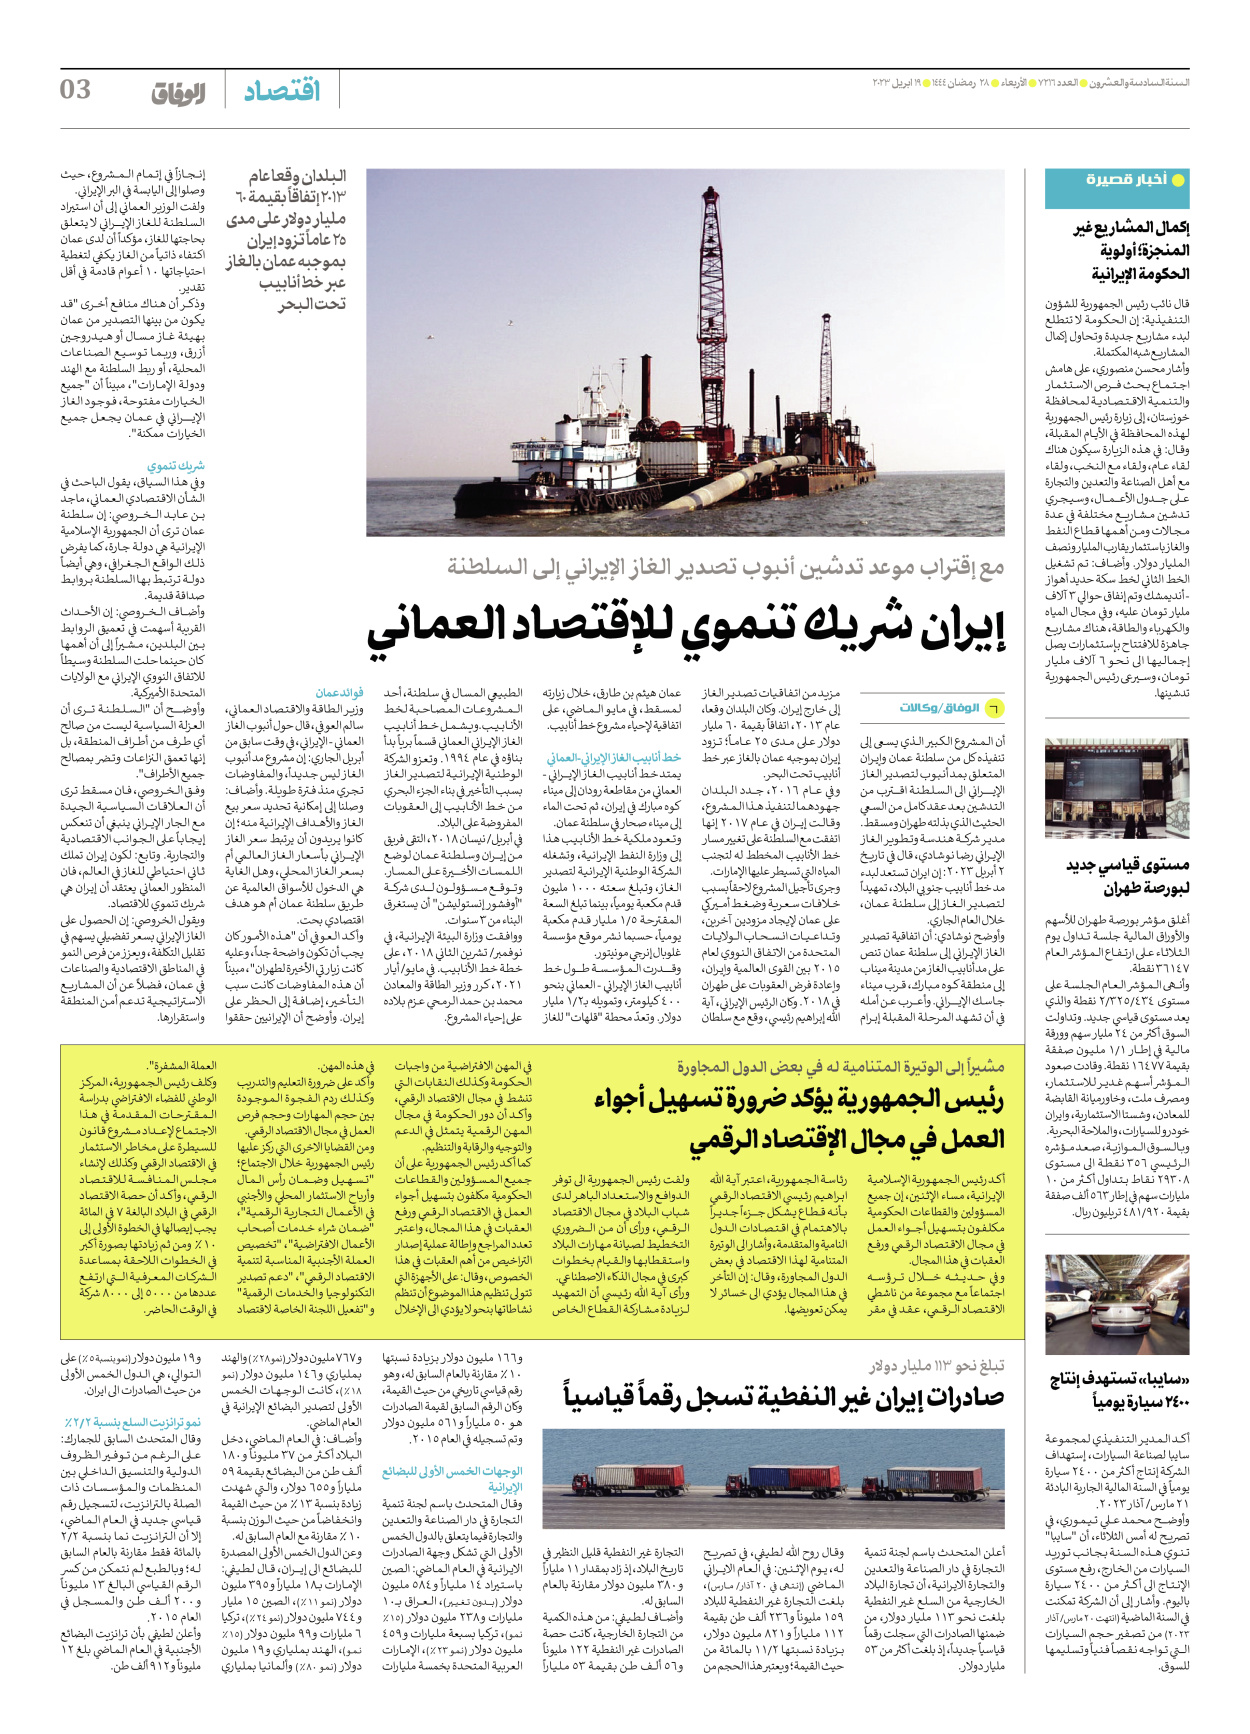 صحیفة ایران الدولیة الوفاق - العدد سبعة آلاف ومائتان وستة عشر - ١٩ أبريل ٢٠٢٣ - الصفحة ۳